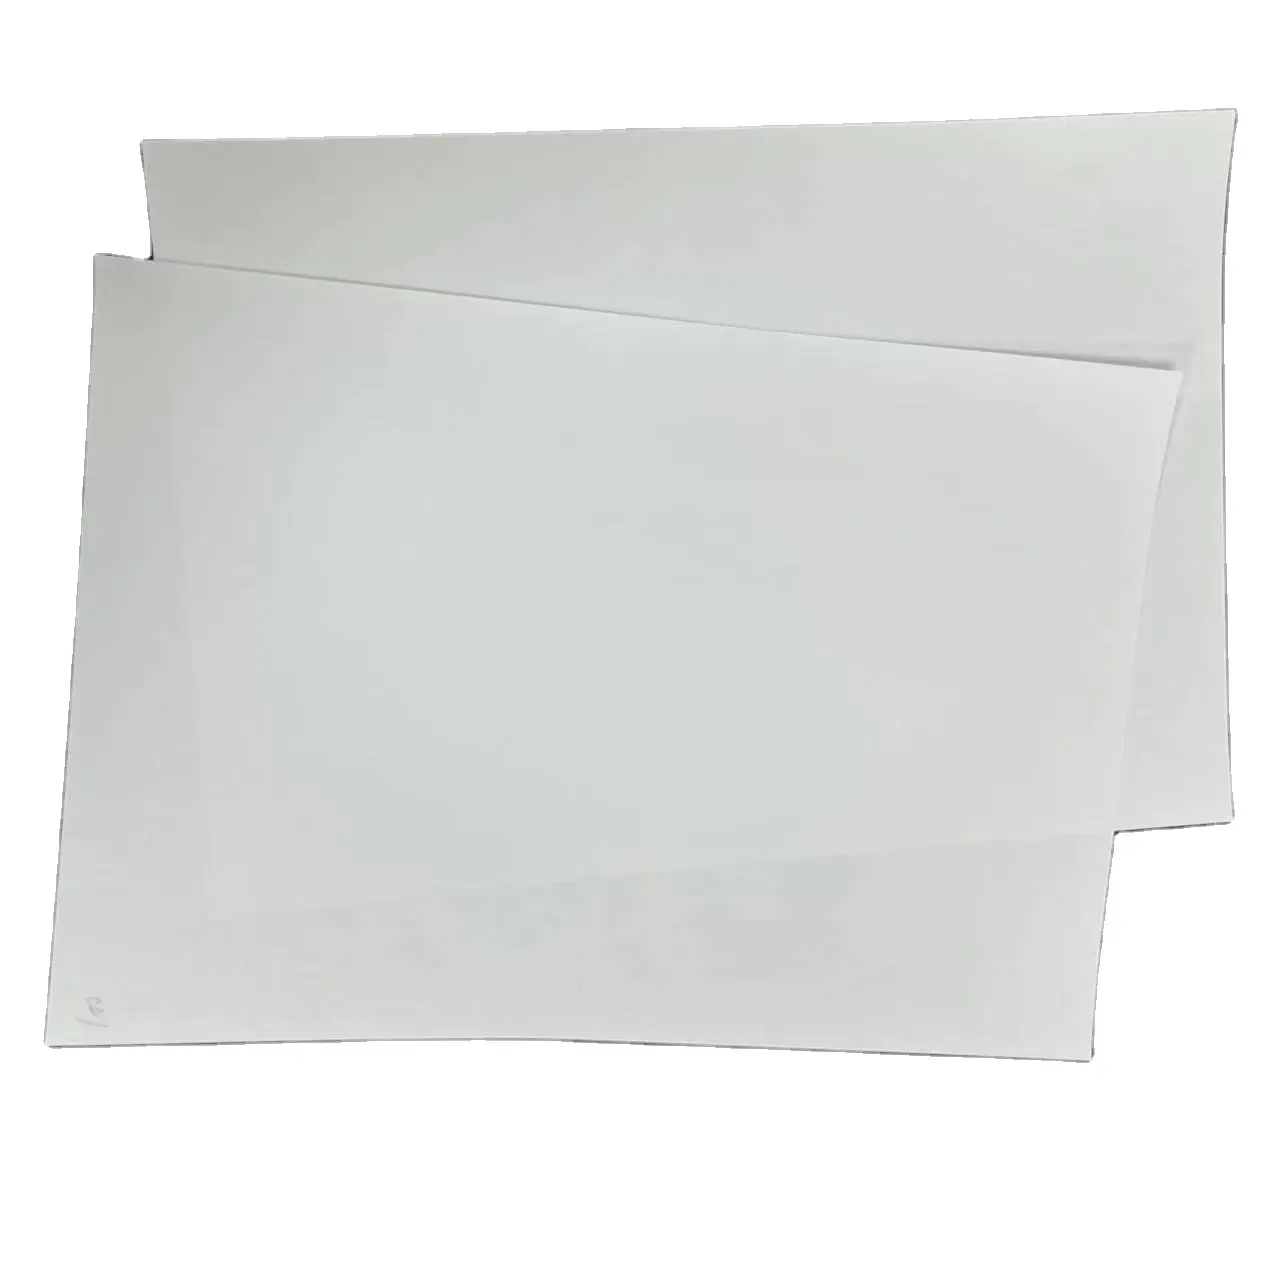 กระดาษพิมพ์ออฟเซตลายละเอียด upm 50-400gsm สีขาวสูง